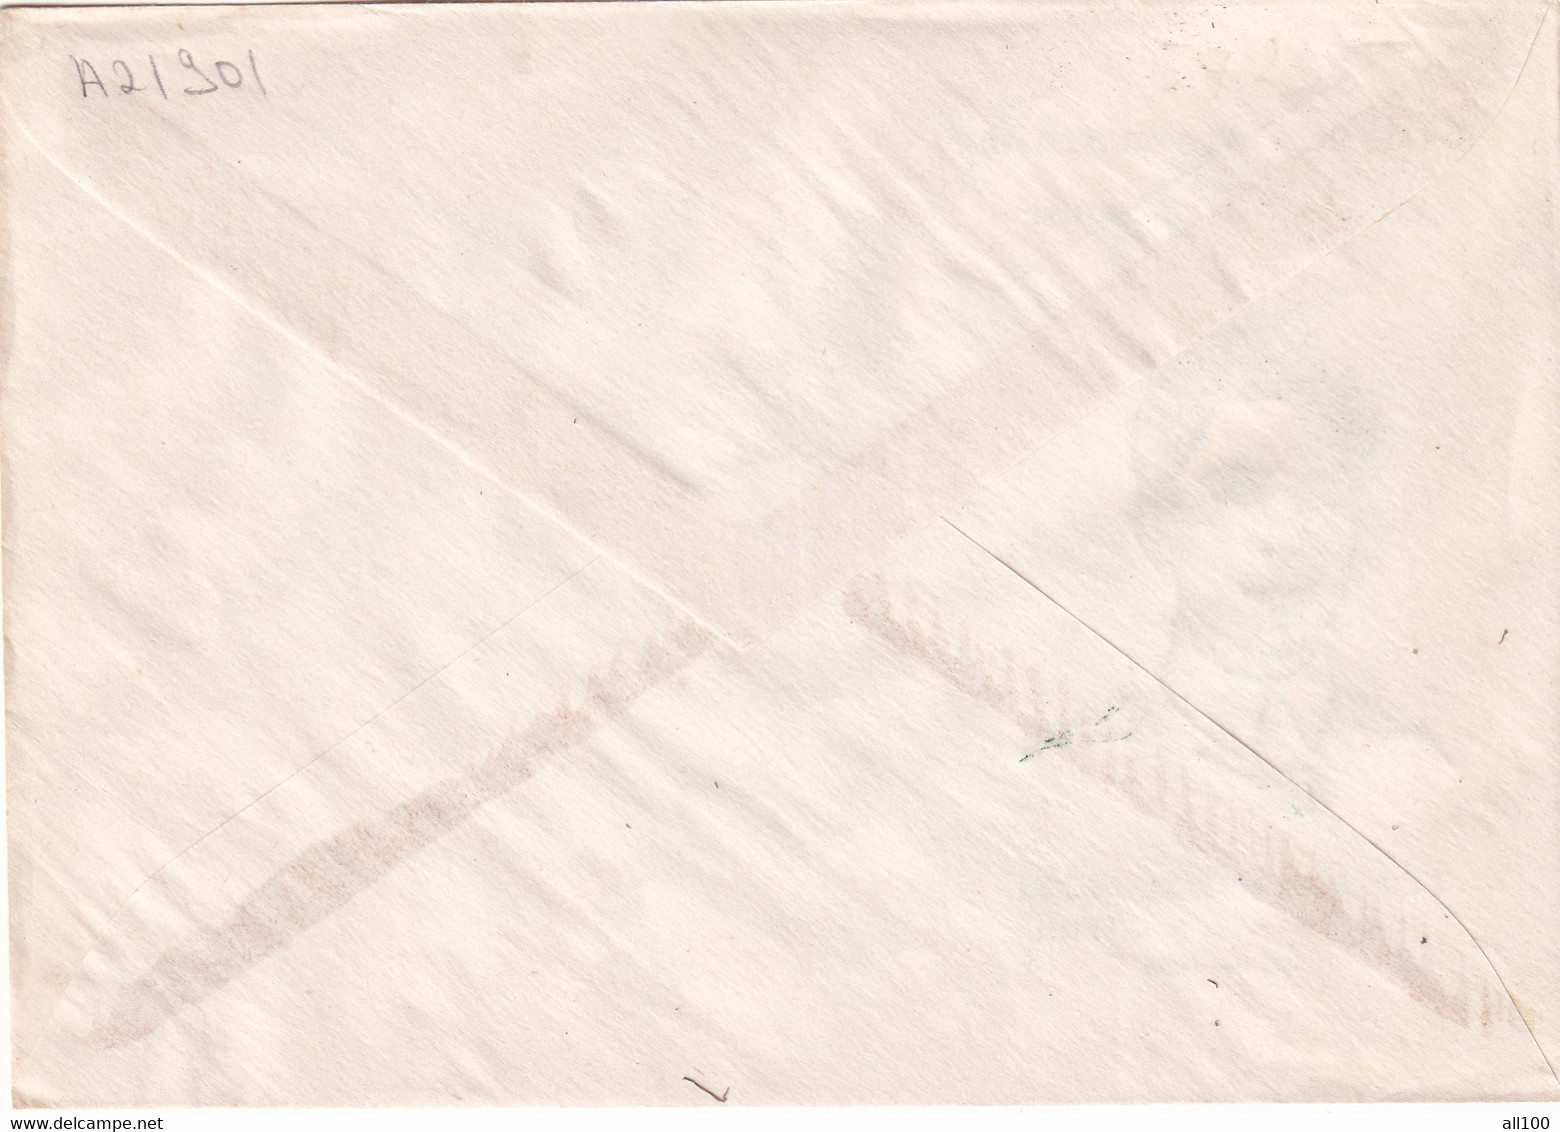 A21901 - Ecaterina Teodoroiu Centenarul Nasterii Societatea Filatelistilor Gorjeni Cover Envelope Unused 1994 Romania - Storia Postale